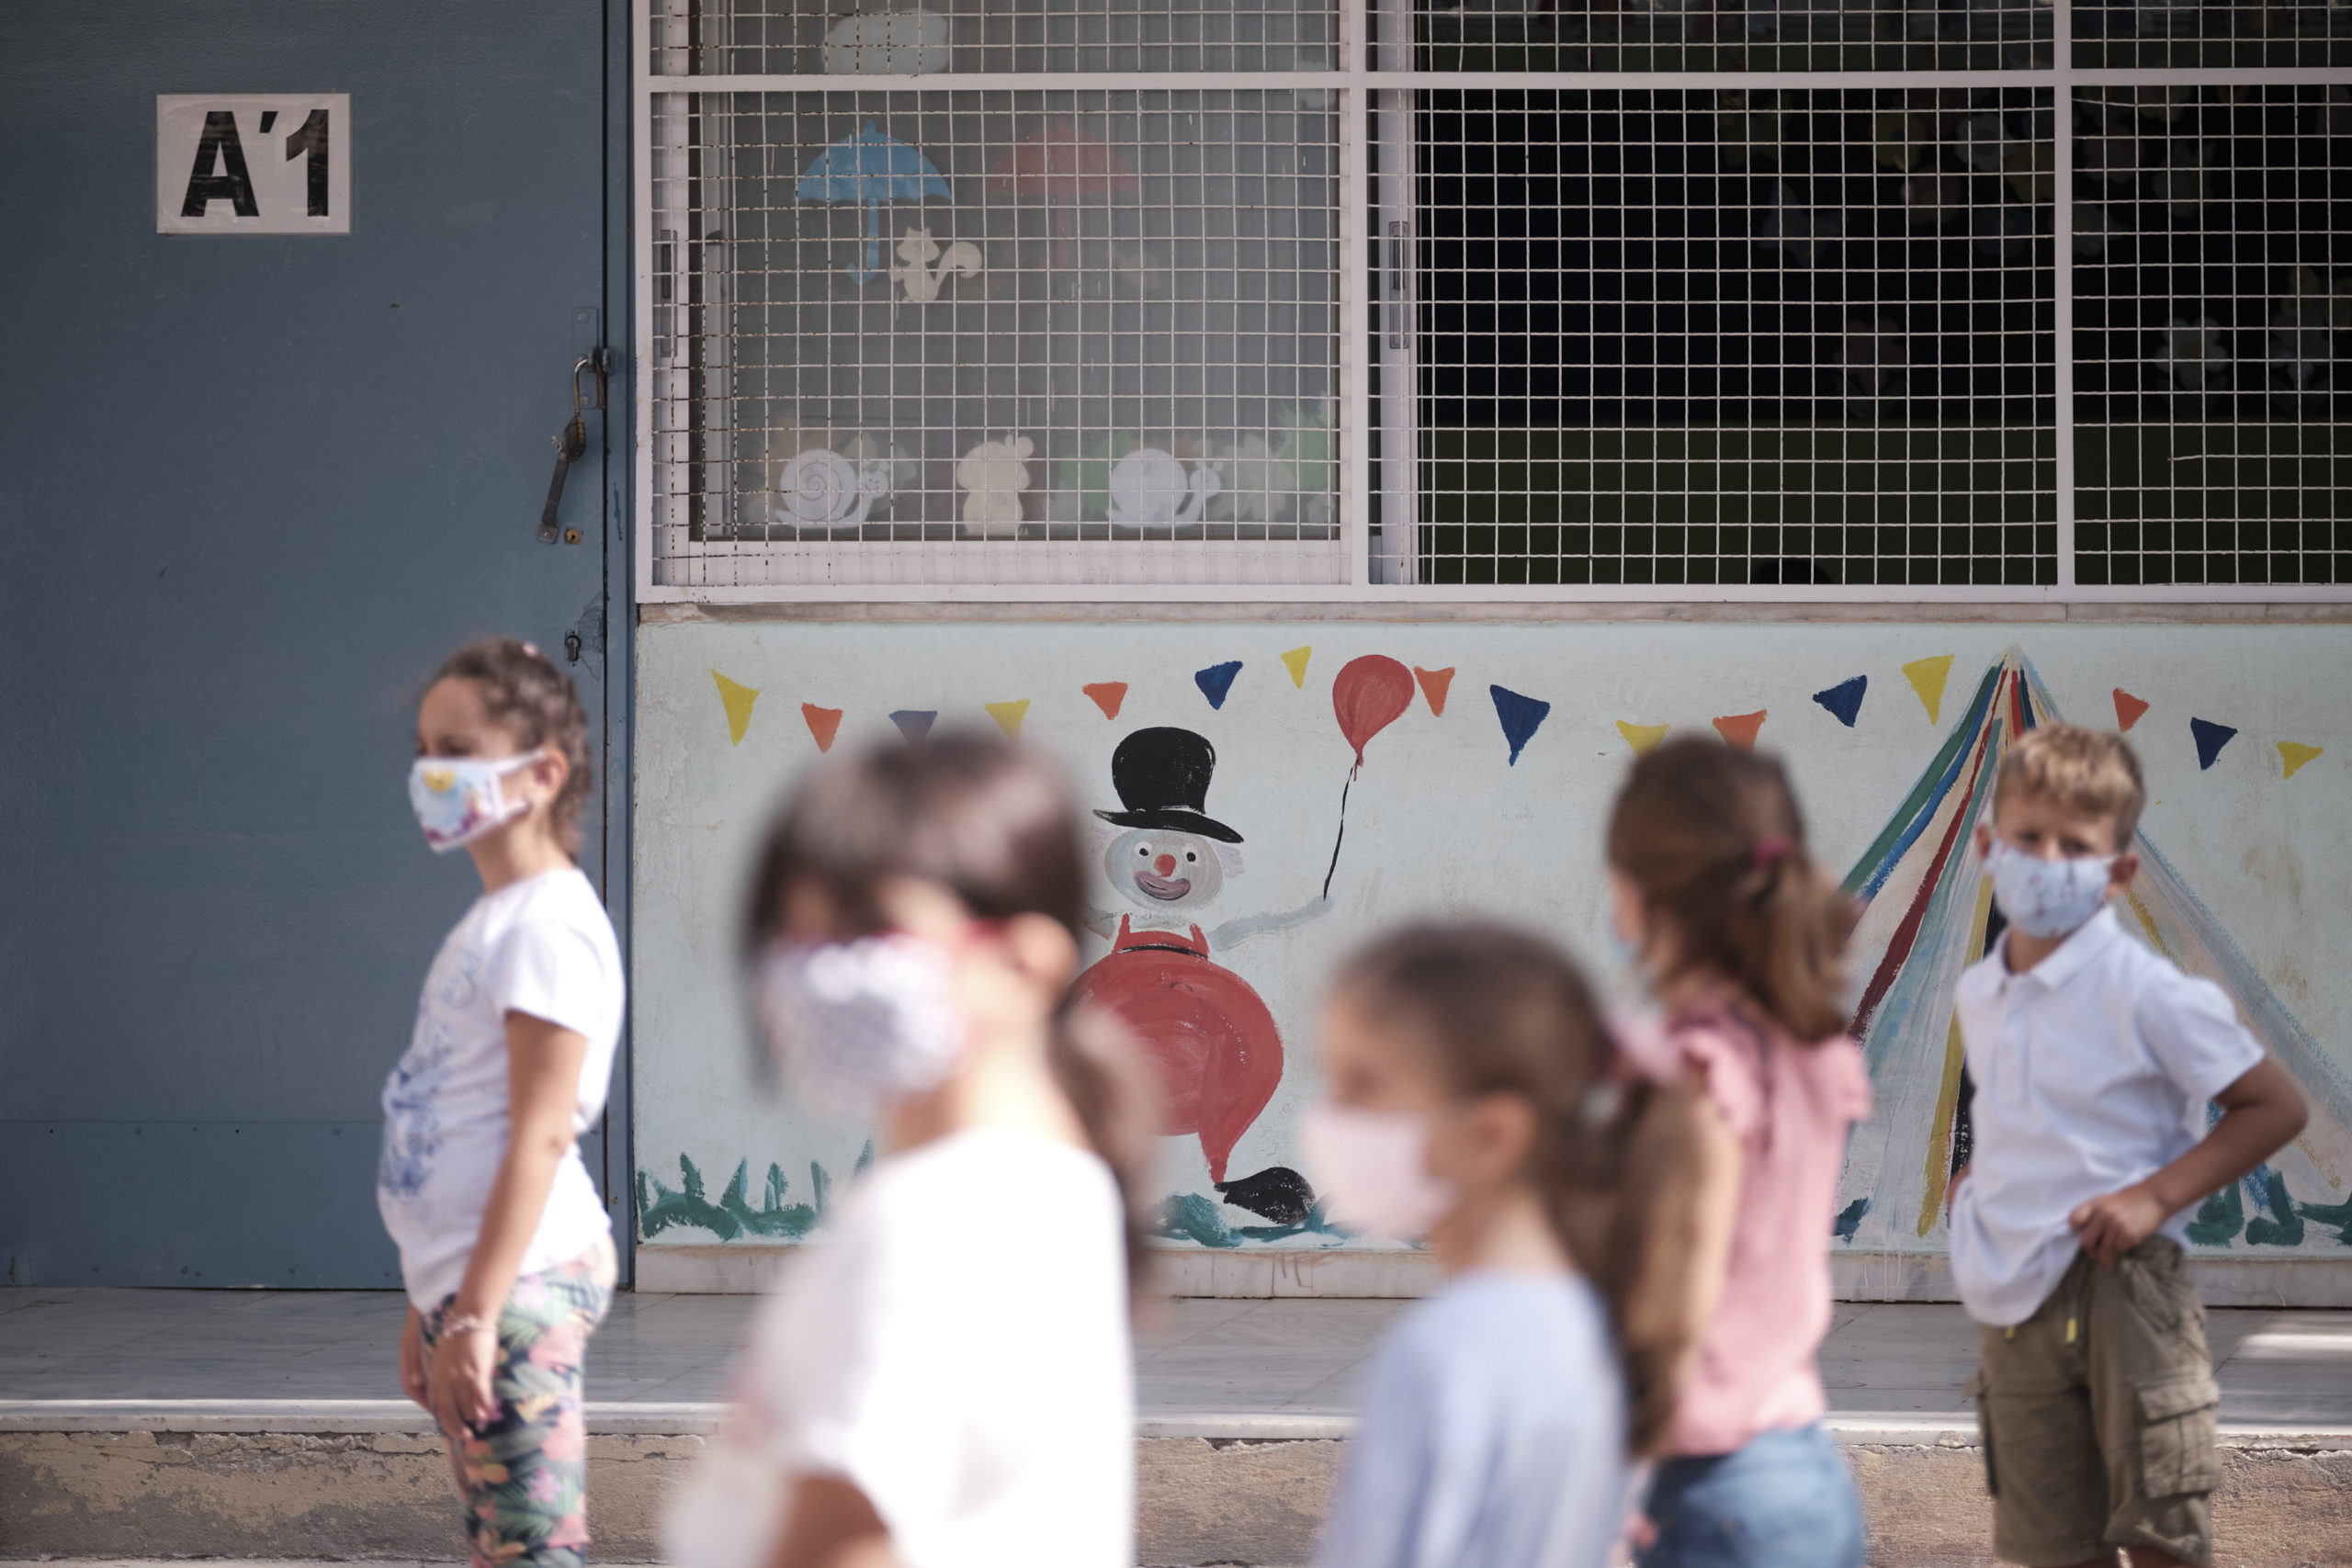 Διοικητικό Πρωτοδικείο Αθηνών: Αποζημίωση 5.000 ευρώ για τραυματισμό 7χρονου μαθητή σε προαύλιο σχολείου